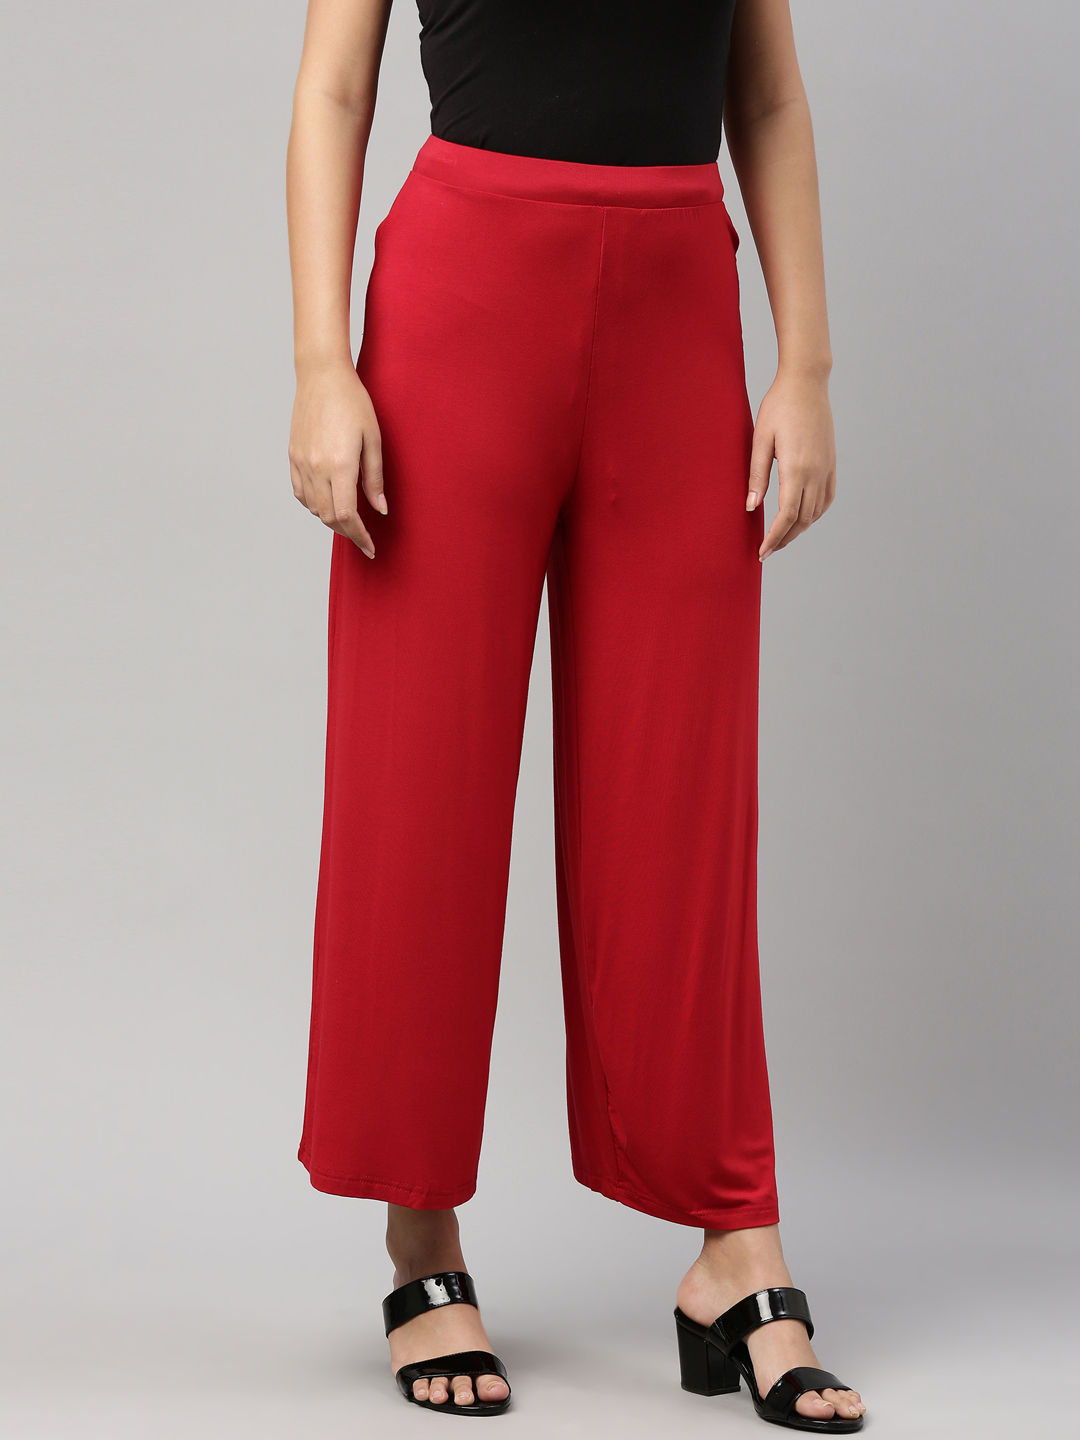 Buy Khaki Pants for Women by GO COLORS Online | Ajio.com